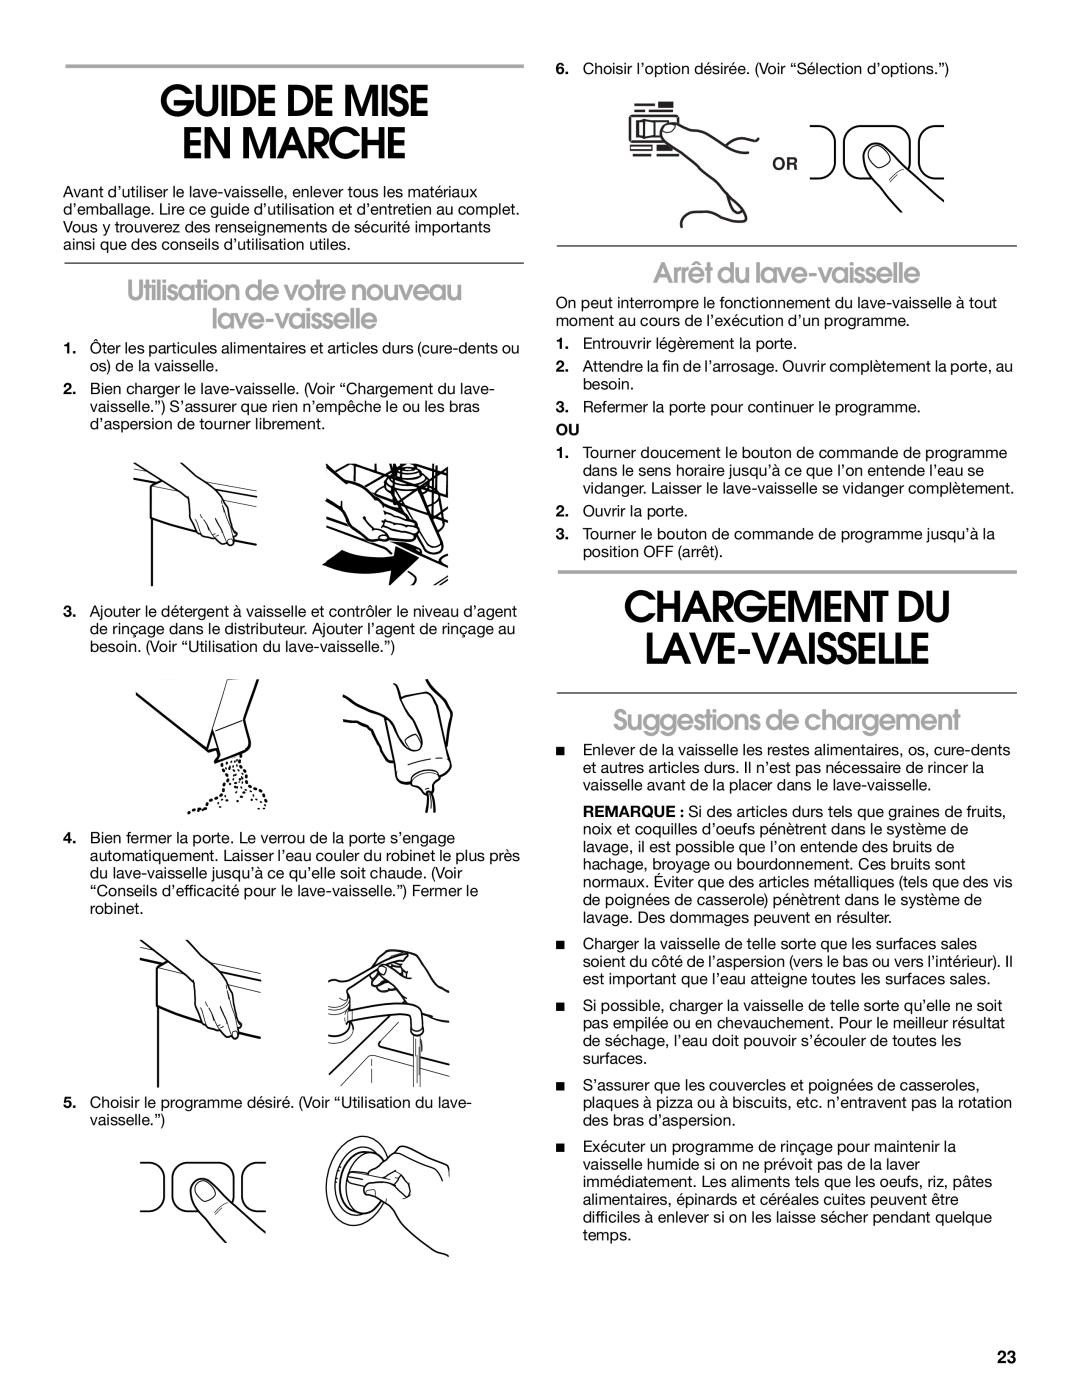 Whirlpool RUD5750 manual Guide De Mise En Marche, Chargement Du Lave-Vaisselle, Utilisation de votre nouveau lave-vaisselle 